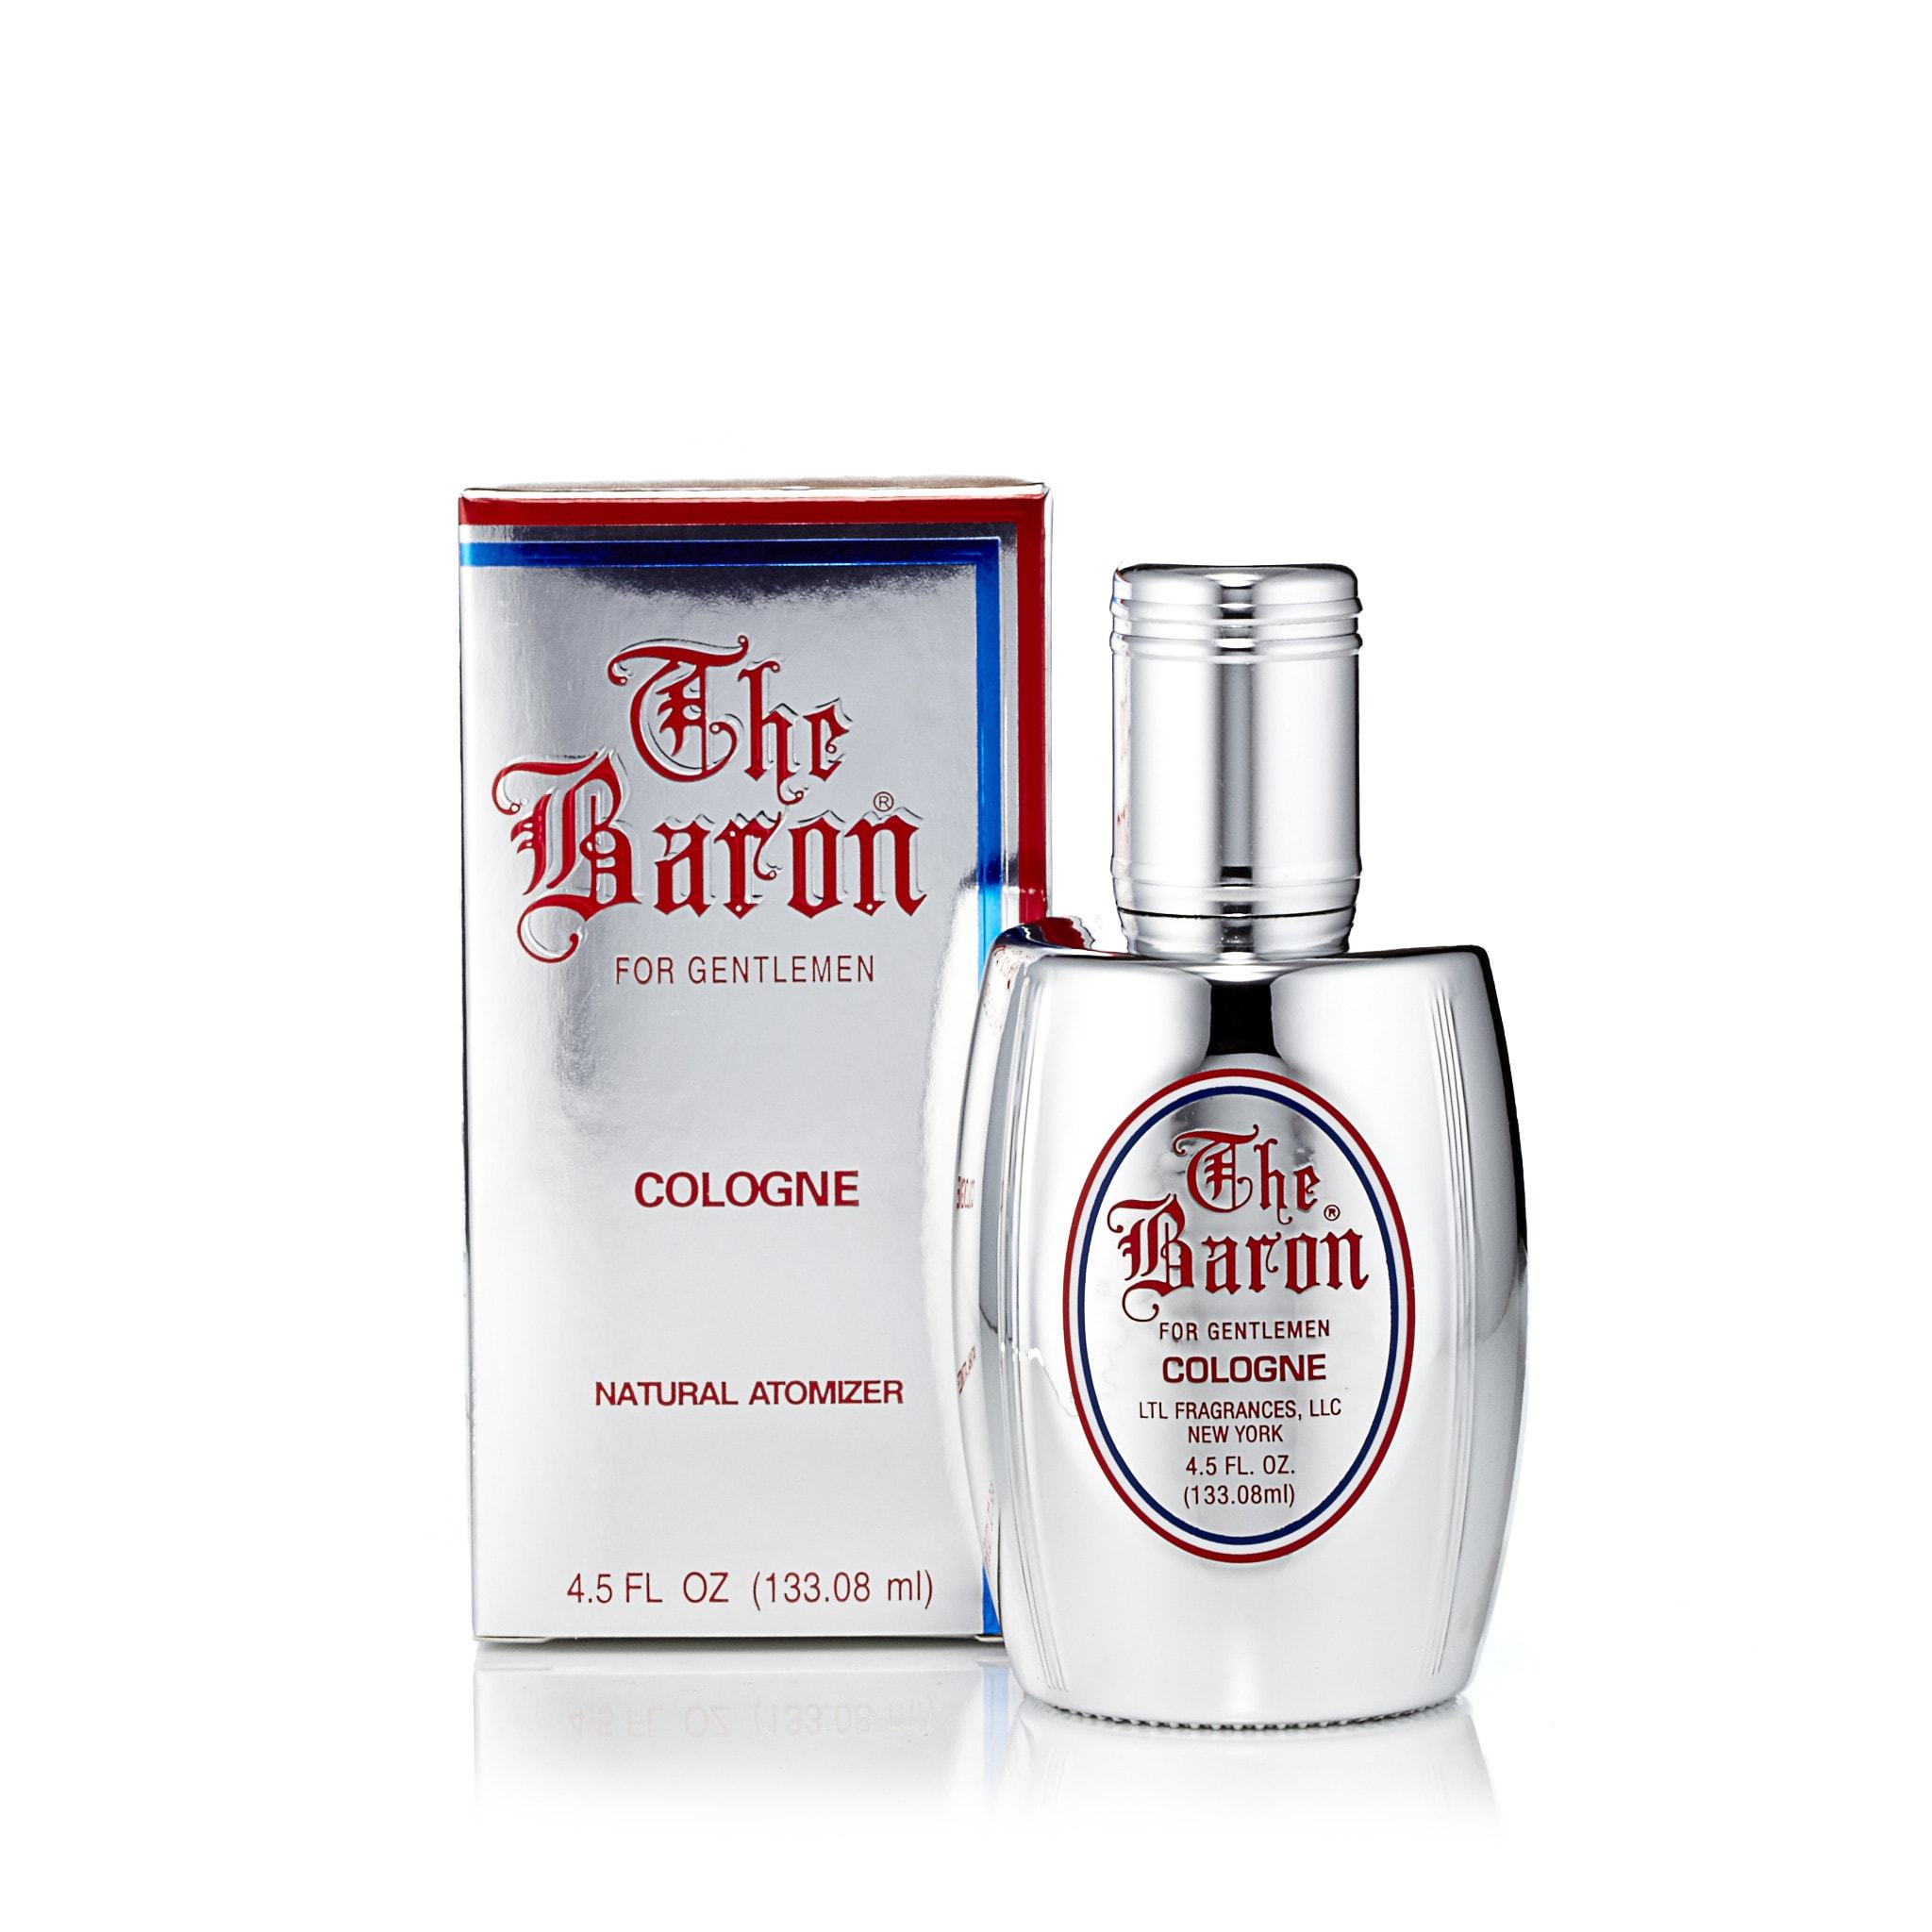 Gentleman Cologne & Aftershave, Mens Fragrance